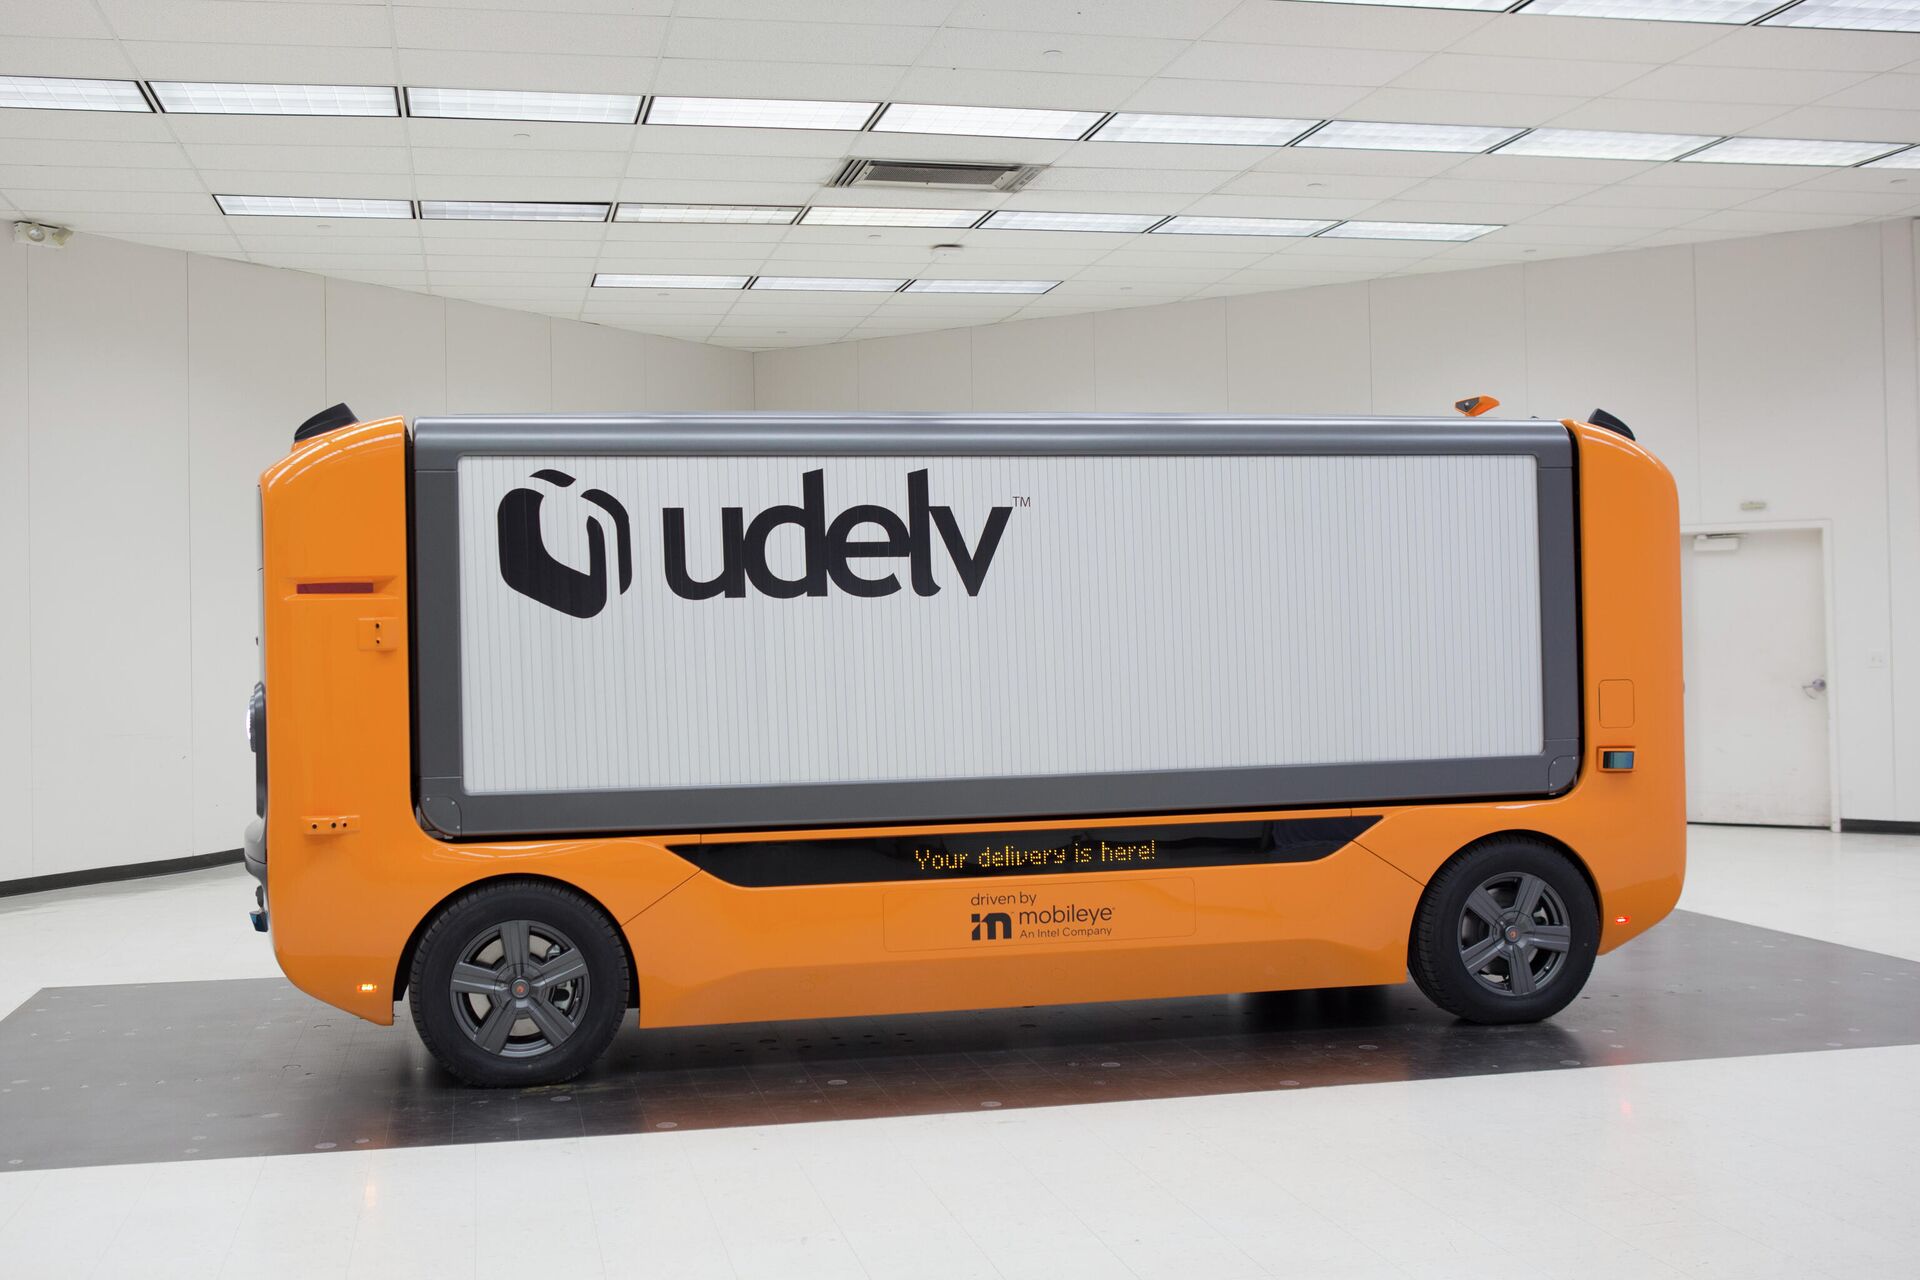 Udelv desarrolla un vehículo de conducción autónoma para la entrega de paquetería. - Sputnik Mundo, 1920, 04.01.2022